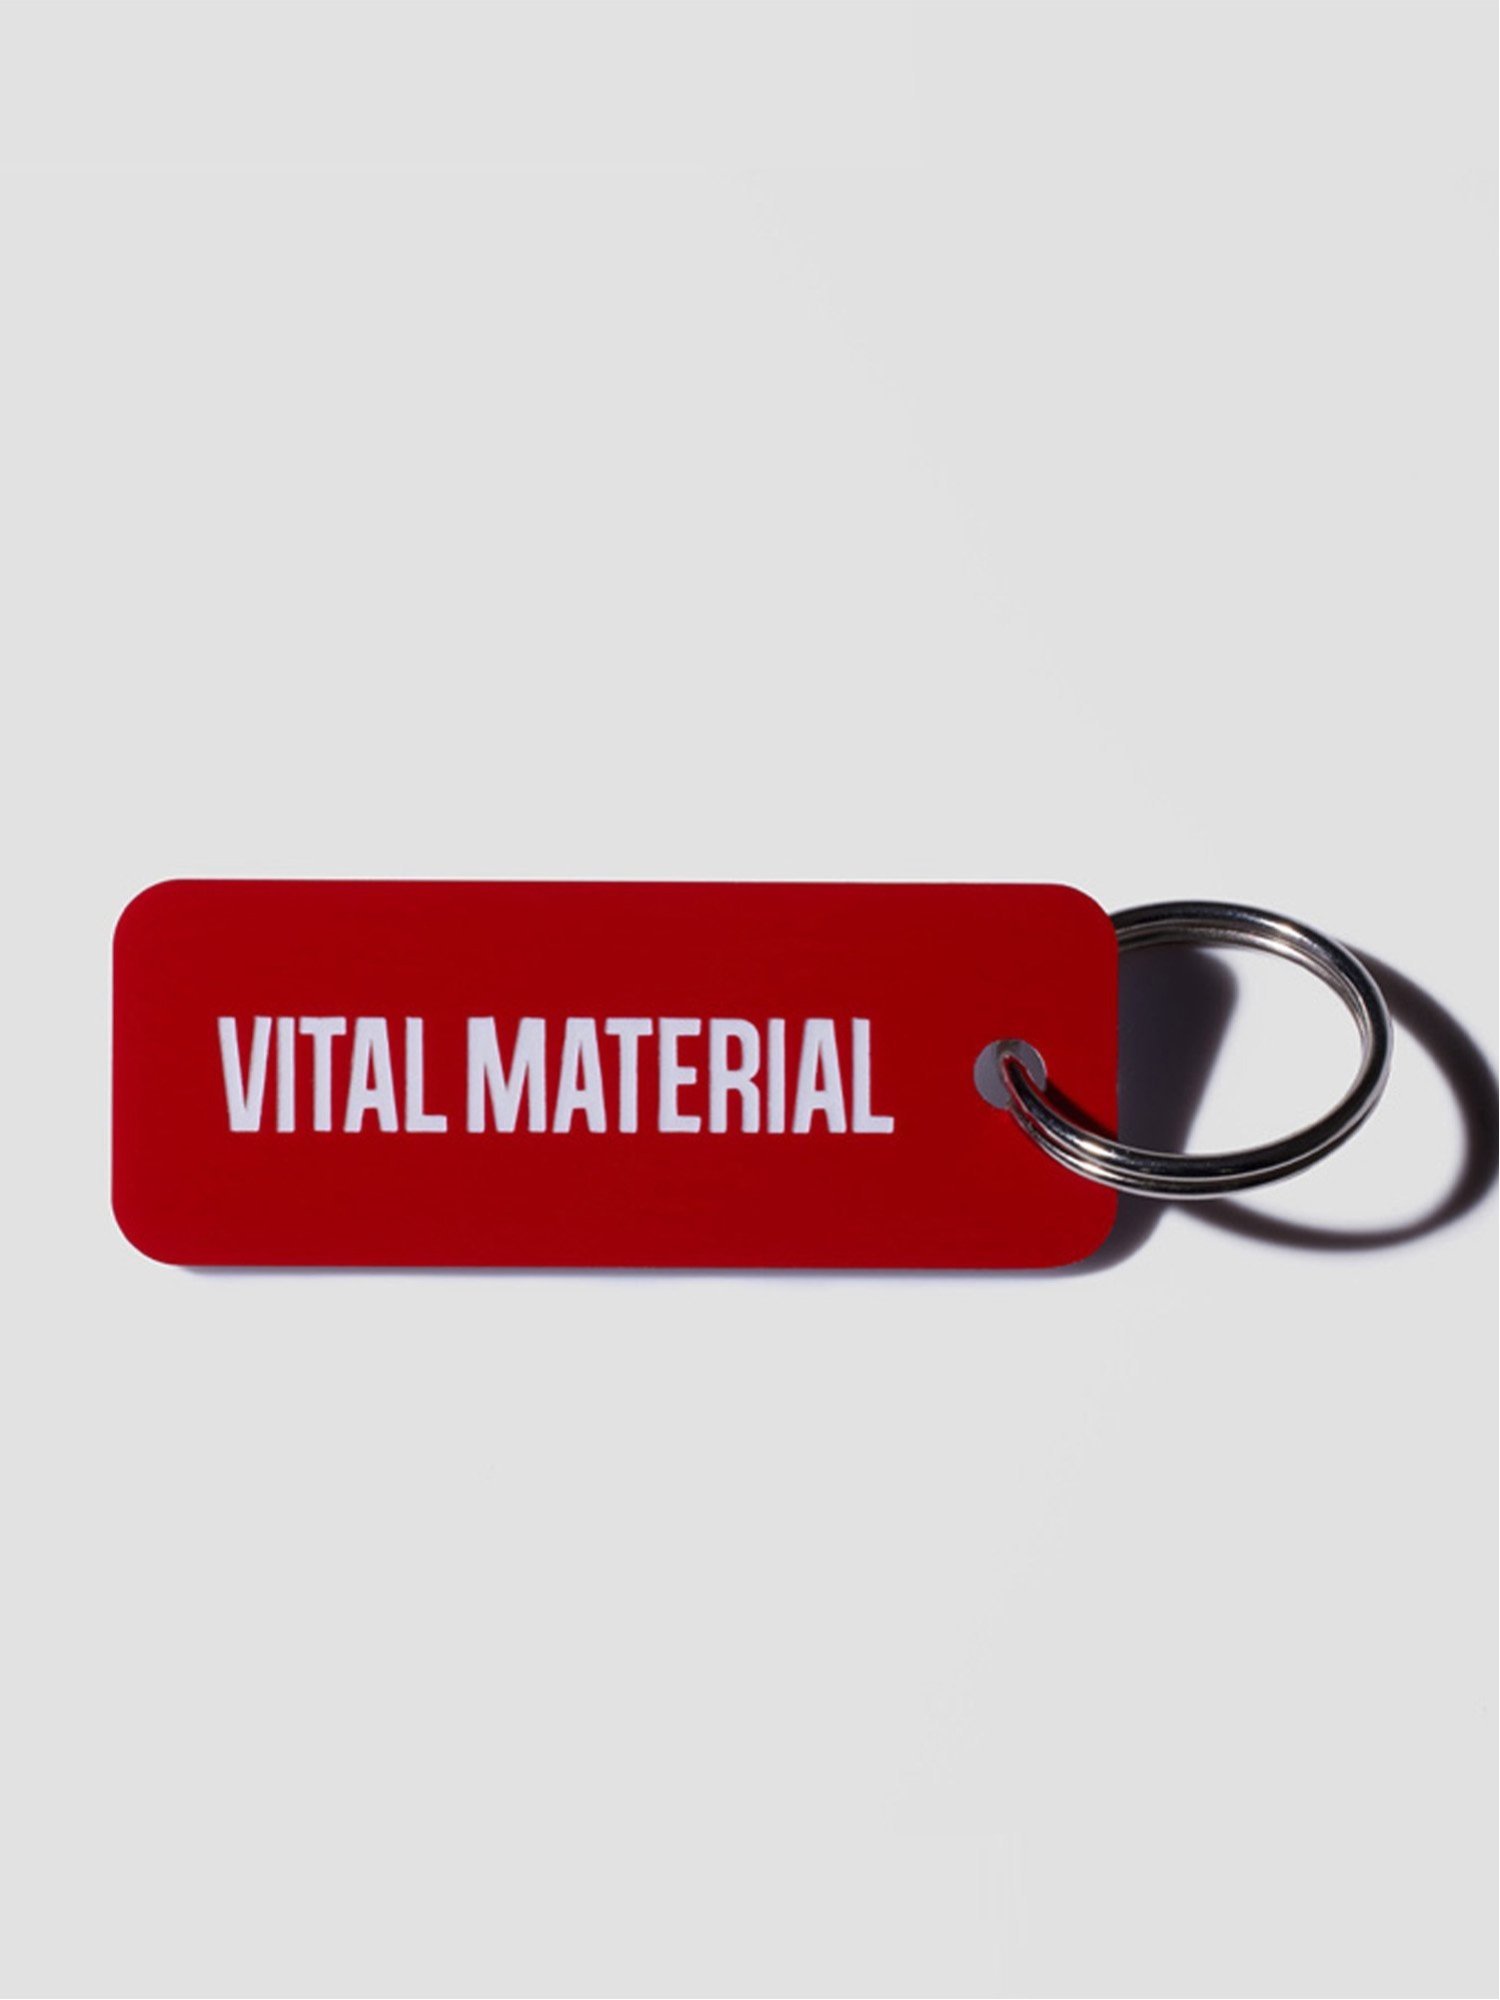 楽天Rakuten FashionVITAL MATERIAL VITAL MATERIAL × Various Keytags CRIMSON / WHITE ヴァイタル マテリアル ファッション雑貨 チャーム・キーチェーン レッド